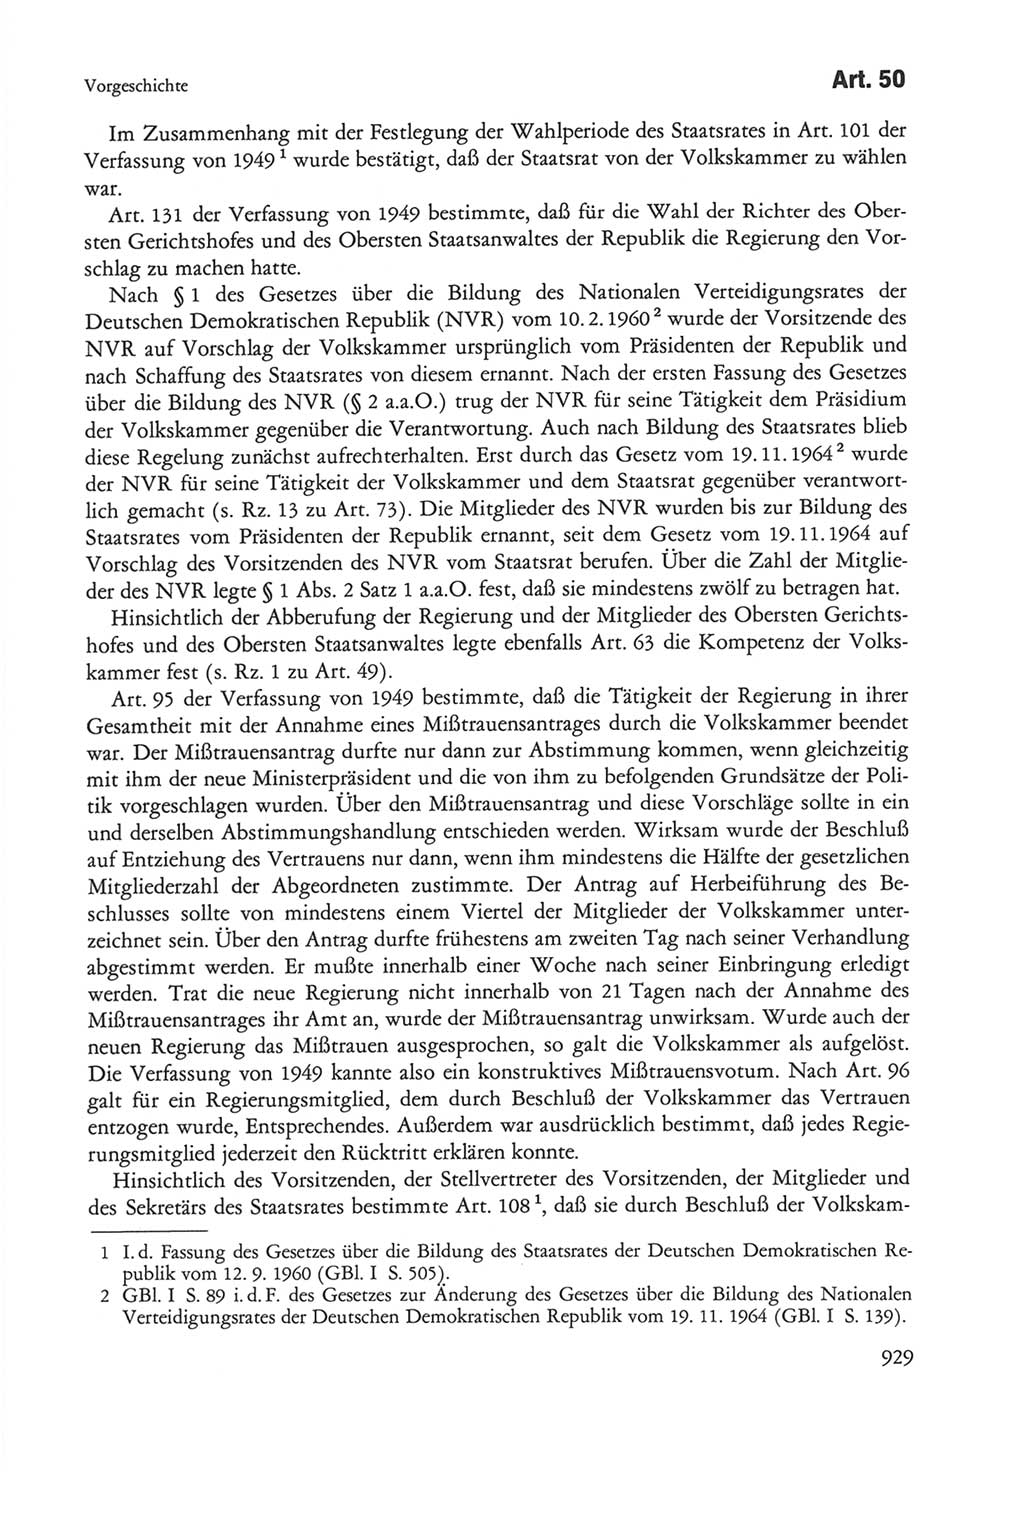 Die sozialistische Verfassung der Deutschen Demokratischen Republik (DDR), Kommentar mit einem Nachtrag 1997, Seite 929 (Soz. Verf. DDR Komm. Nachtr. 1997, S. 929)